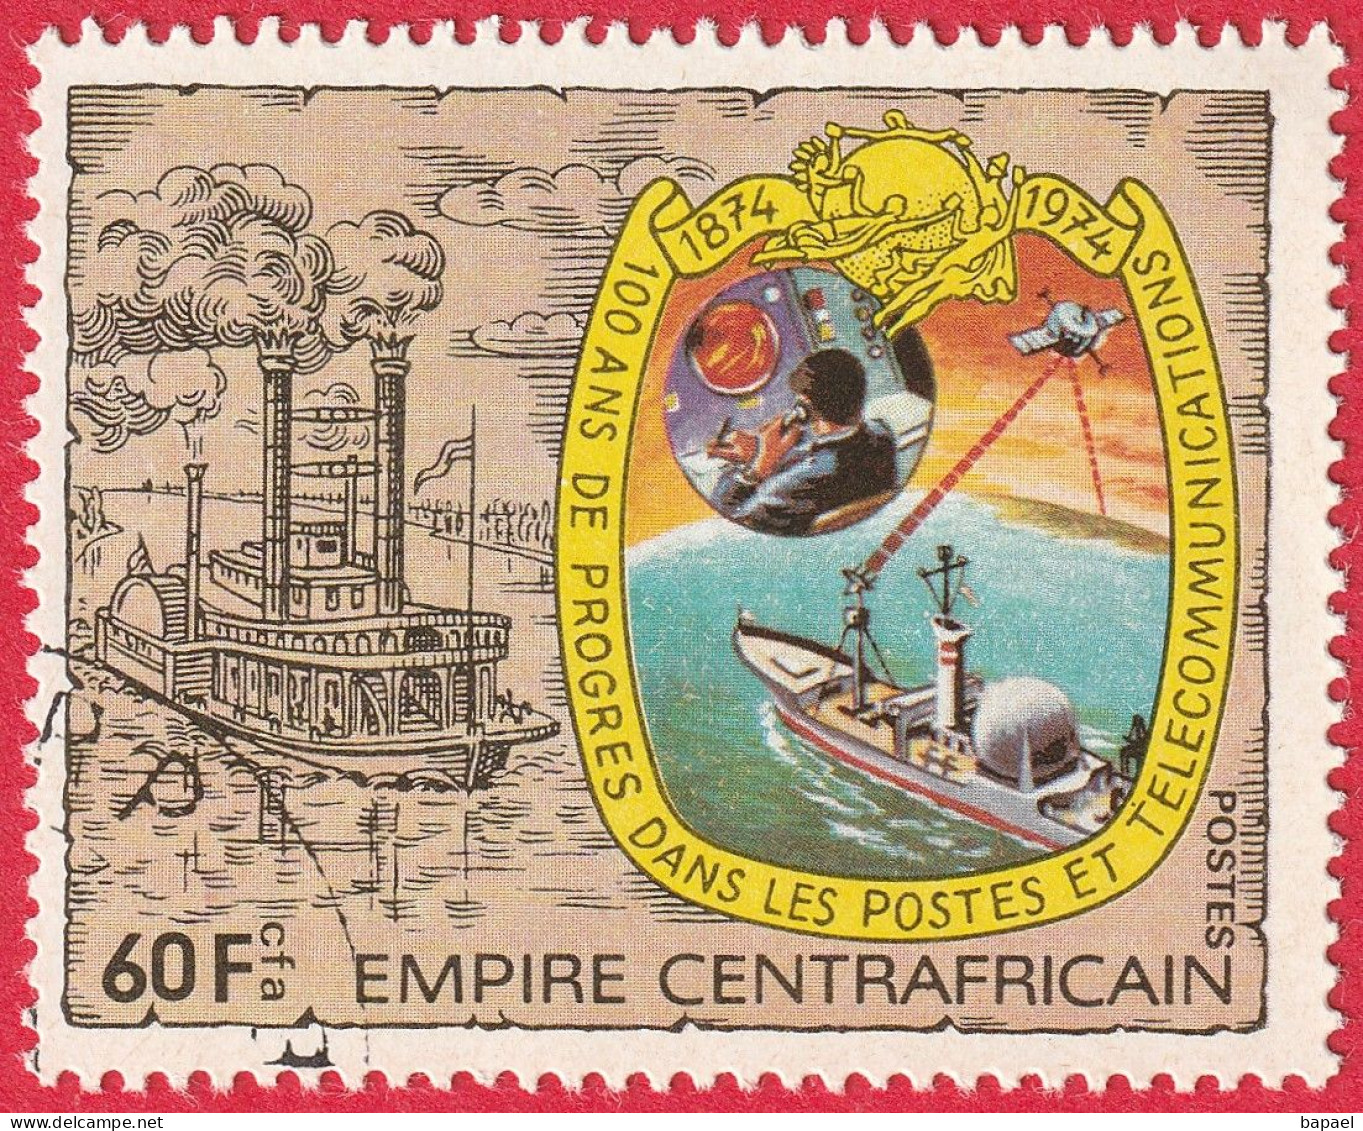 N° Yvert & Tellier 336 à 339 - Empire Centrafricain (1978) (Oblitéré - Gomme Intacte) - Postes Et Télécommunications - Centrafricaine (République)